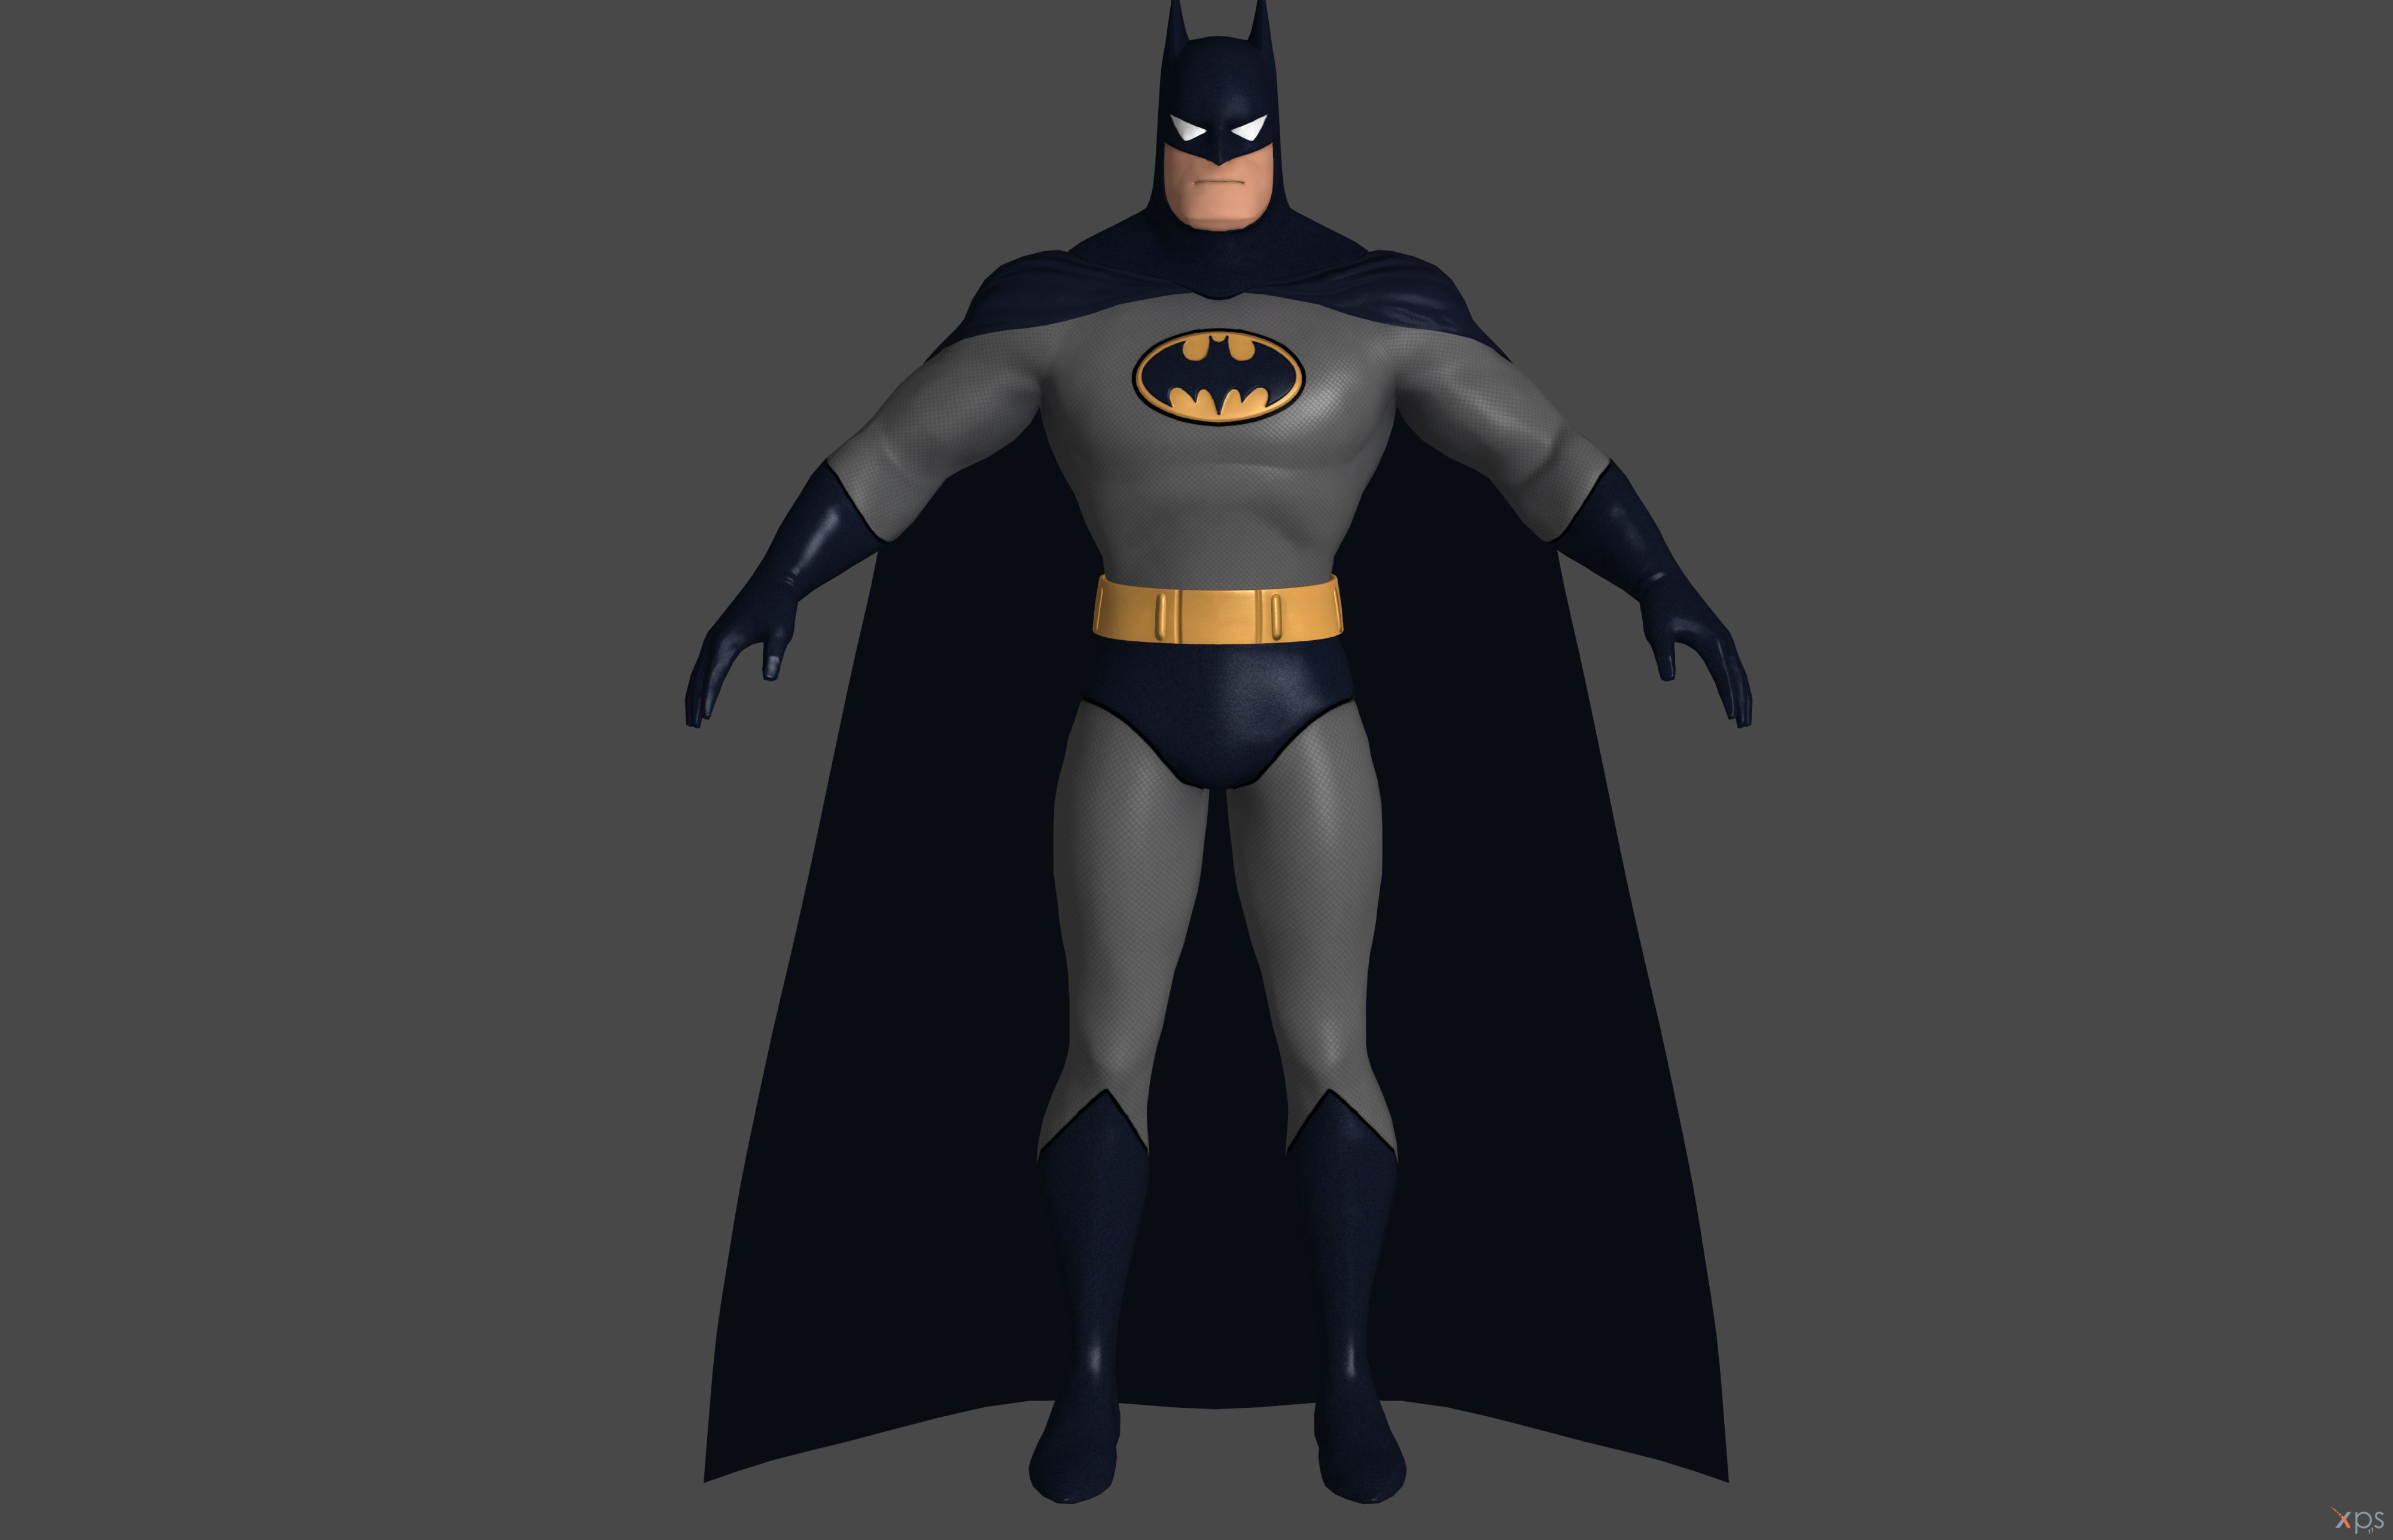 Batman: Arkham City' Batman Animated Series XPS!! by lezisell on DeviantArt